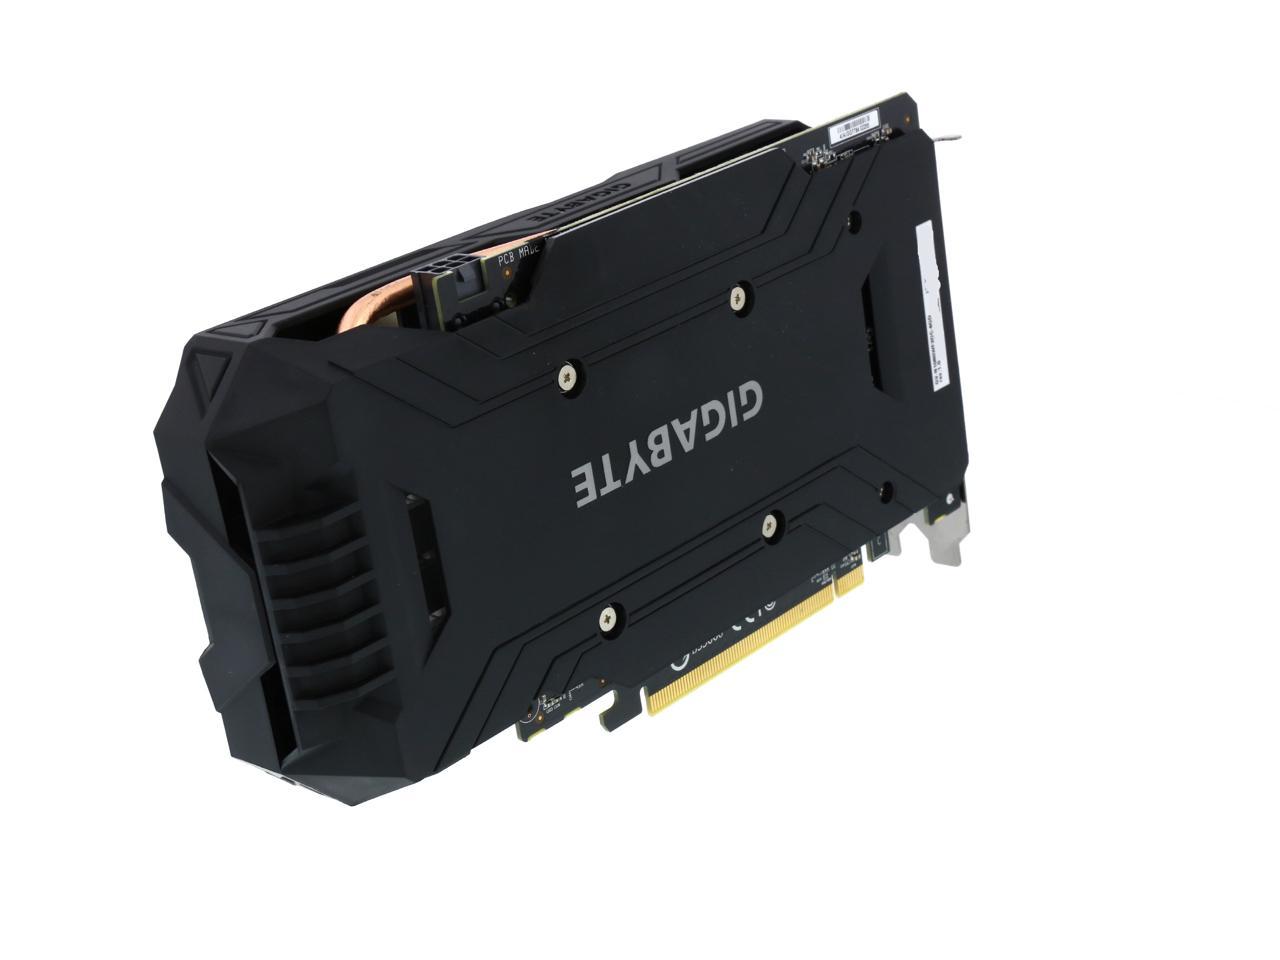 GIGABYTE GeForce GTX 1060 6GB GDDR5 PCI Express 3.0 x16 ATX Video Card  GV-N1060WF2OC-6GD